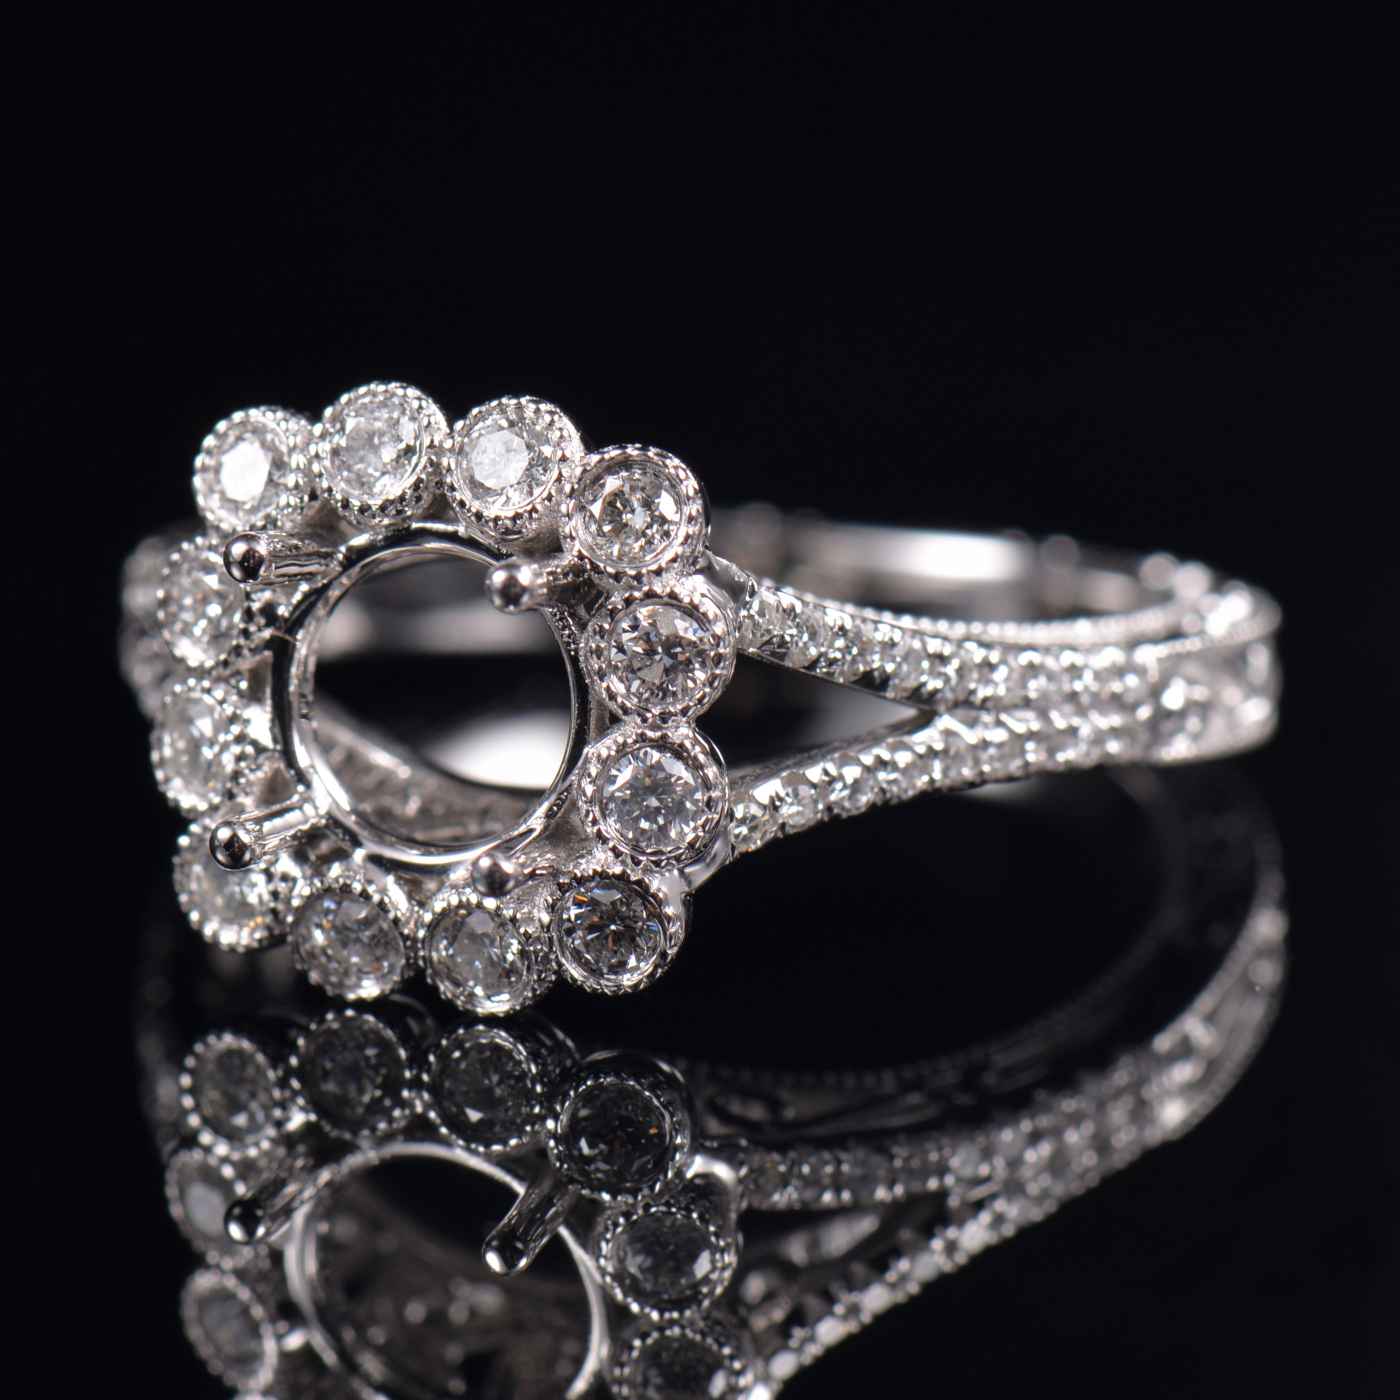 Vintage Engagement Ring Mounting - 1